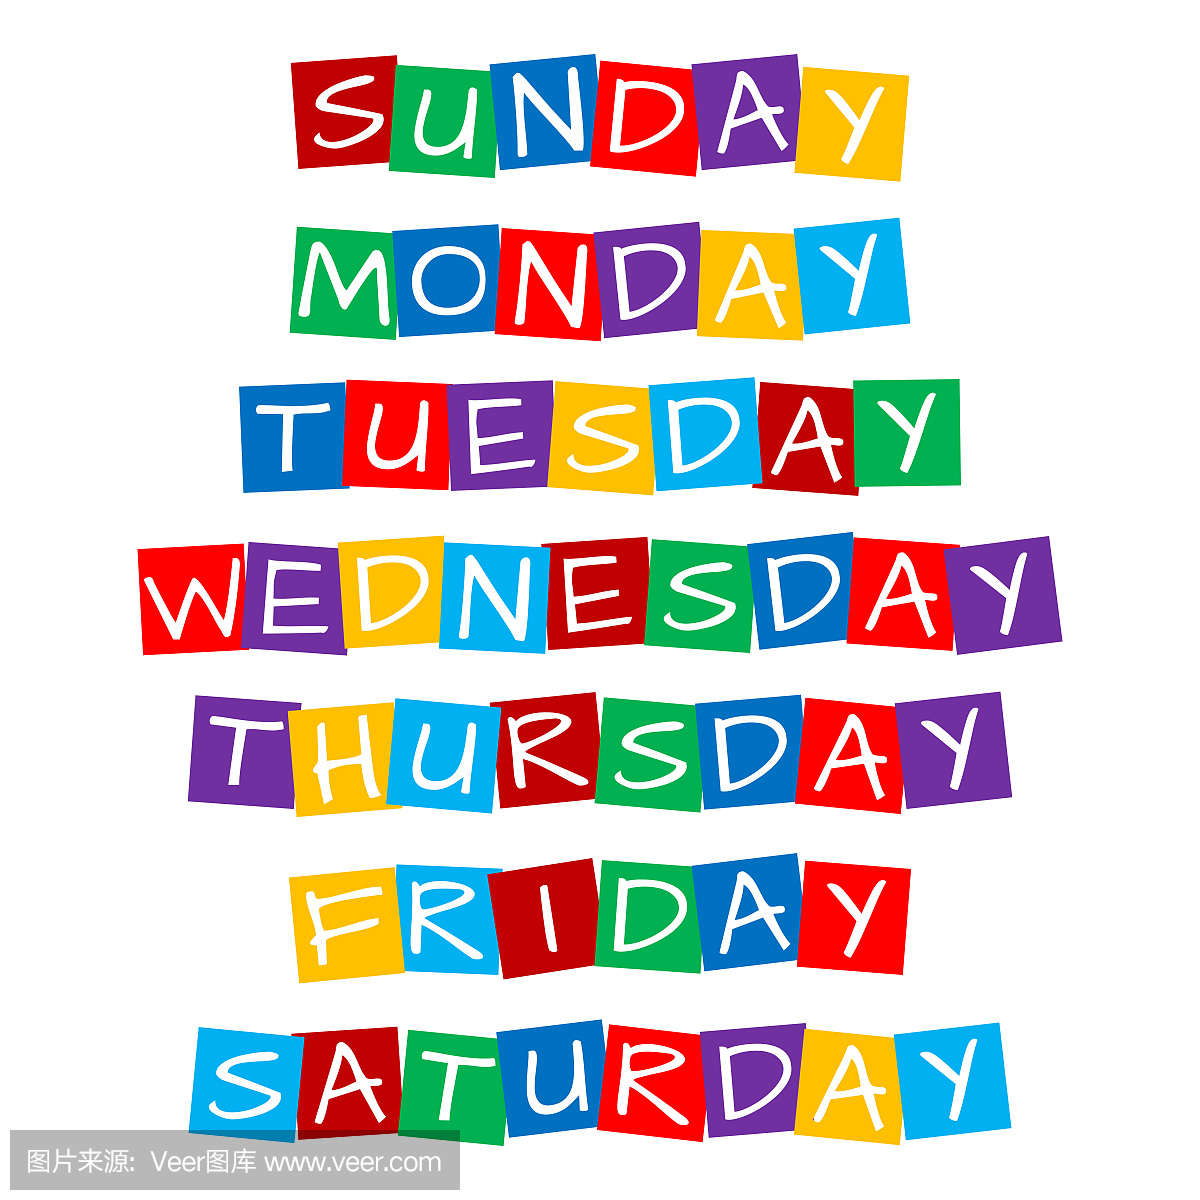 【月份英文】月份與星期的英文對照表、縮寫與發音 | Langster